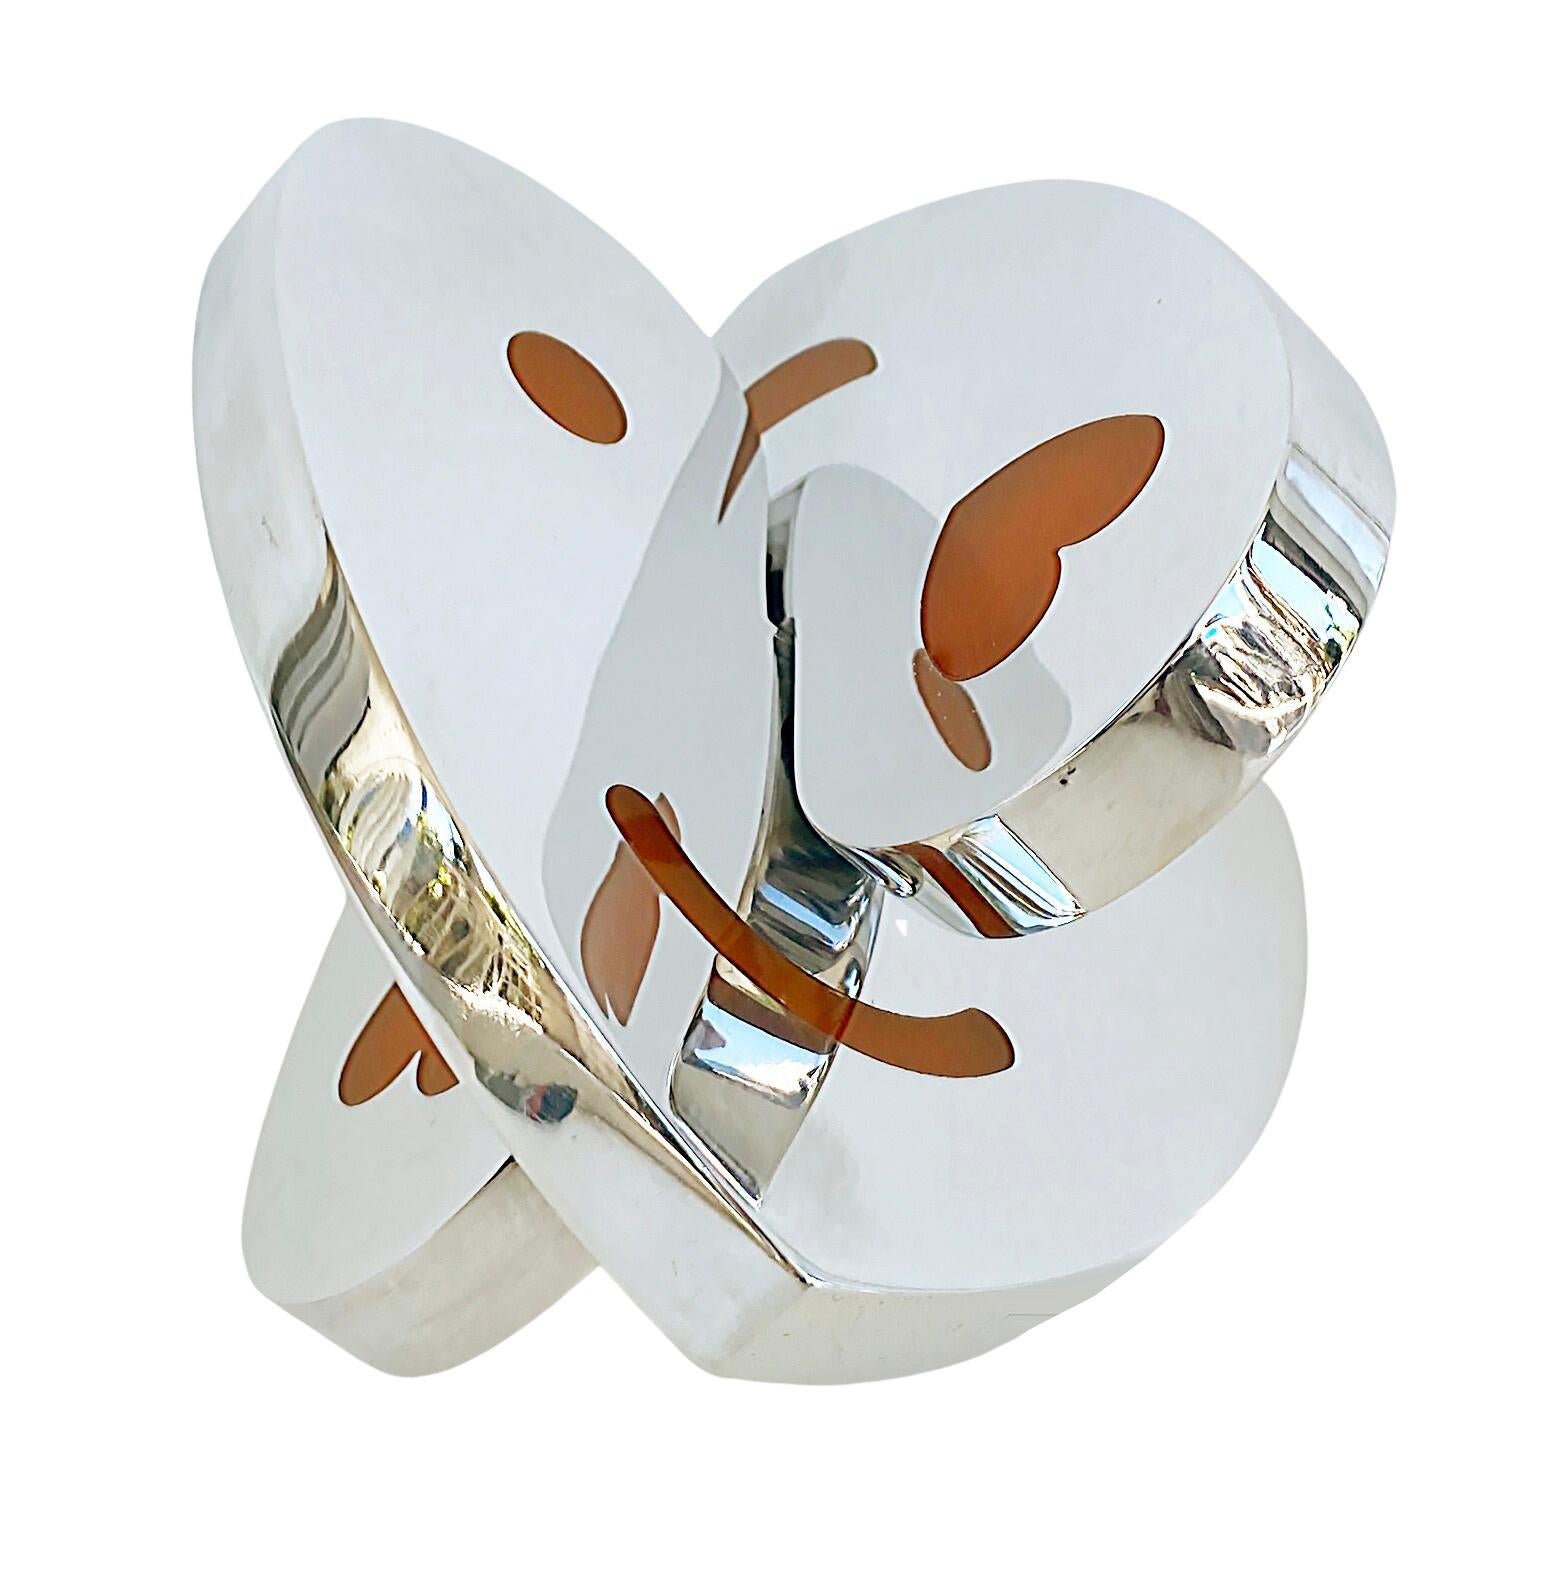  Michael Gitter Sculpture de cœurs imbriqués en aluminium et résine époxy 

Nous proposons à la vente une sculpture de cœurs emboîtés en aluminium poli et résine époxy de l'artiste Michael Gitter.  Cette pièce est issue de la production actuelle et